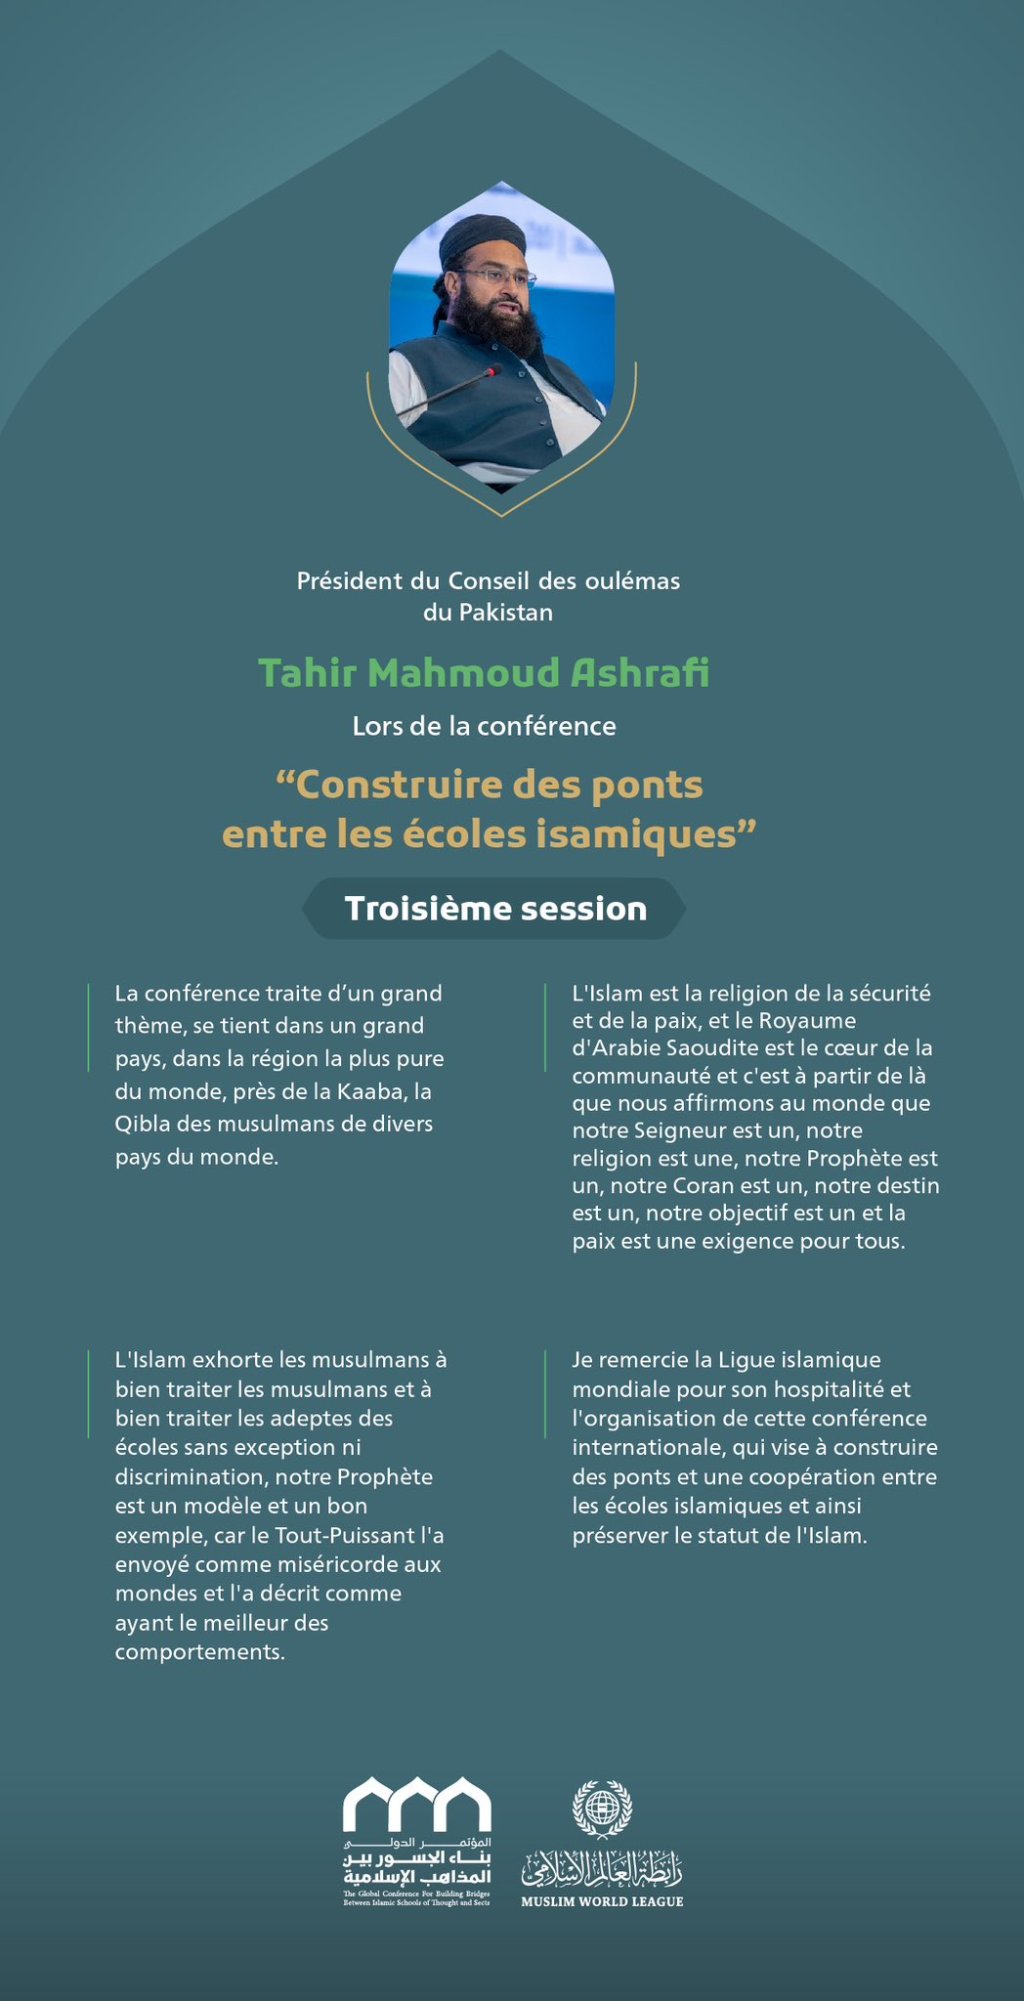 « Une communauté unique » Extraits du discours du Président du Conseil des oulémas du Pakistan Tahir Mahmoud Ashrafi